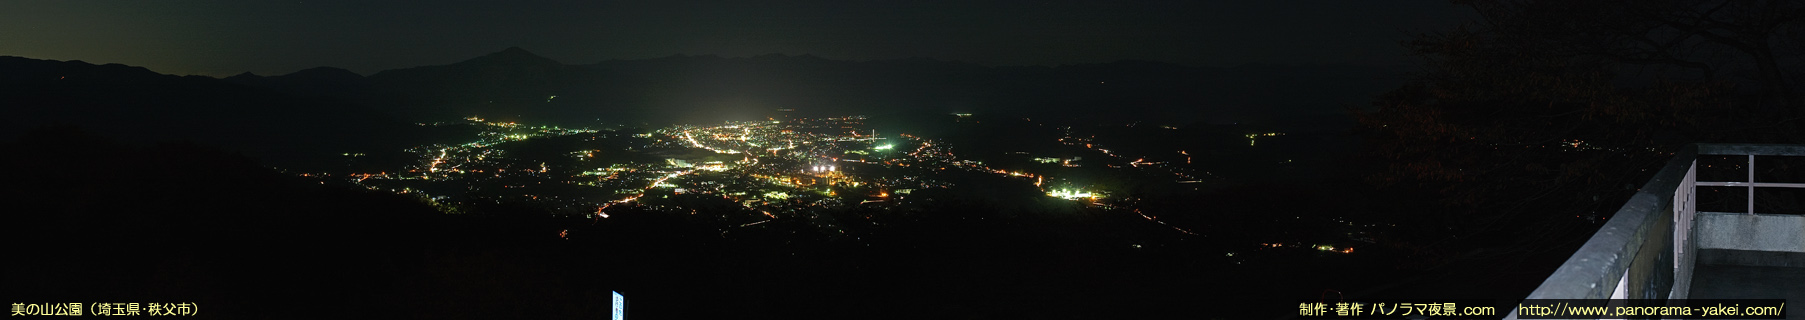 美の山公園からのパノラマ夜景写真